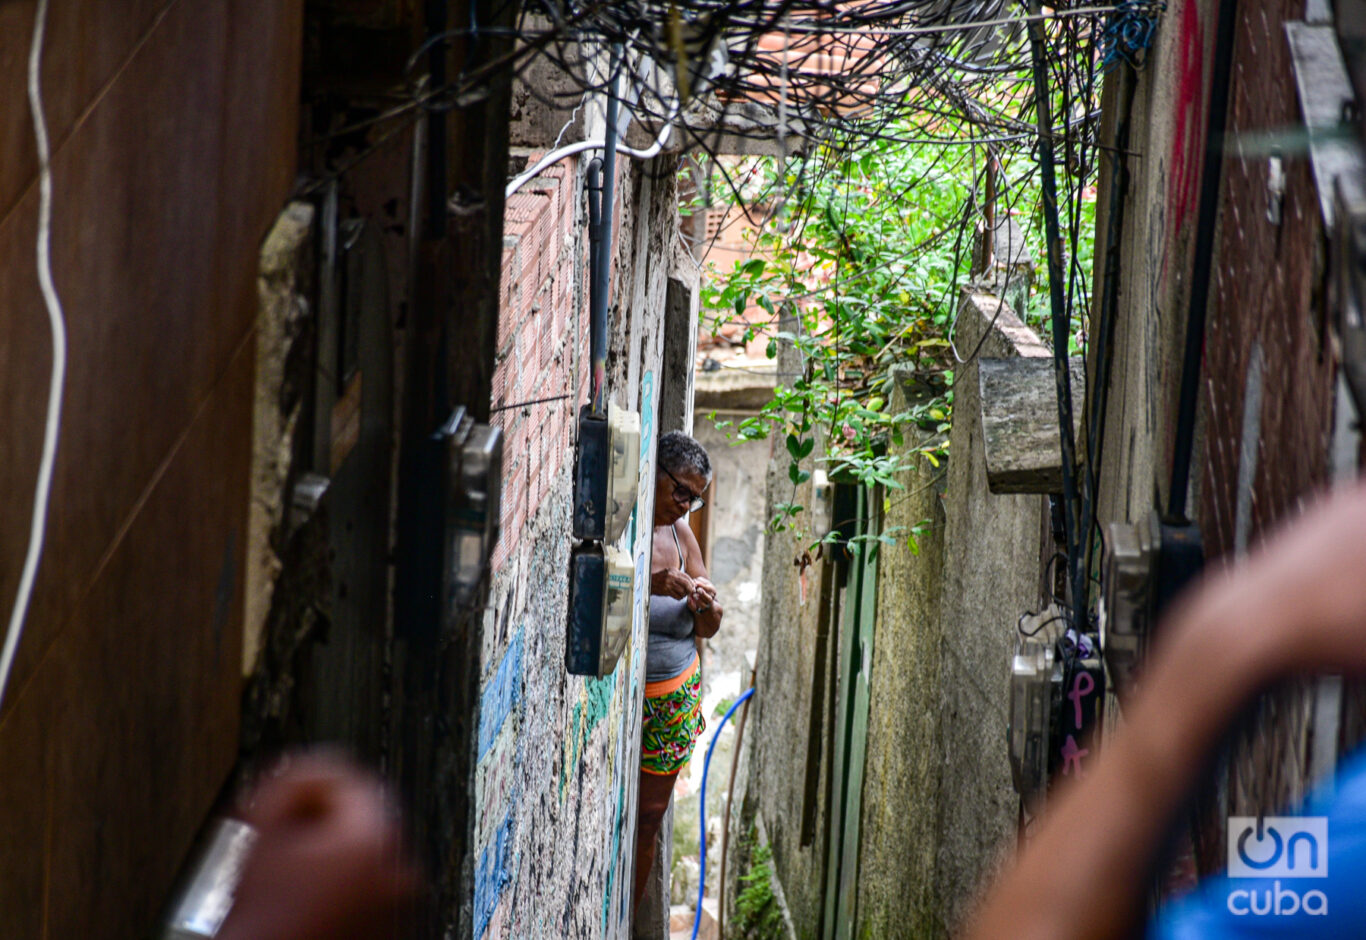  Una de las vecinas de Rocinha. Foto: Kaloian.
